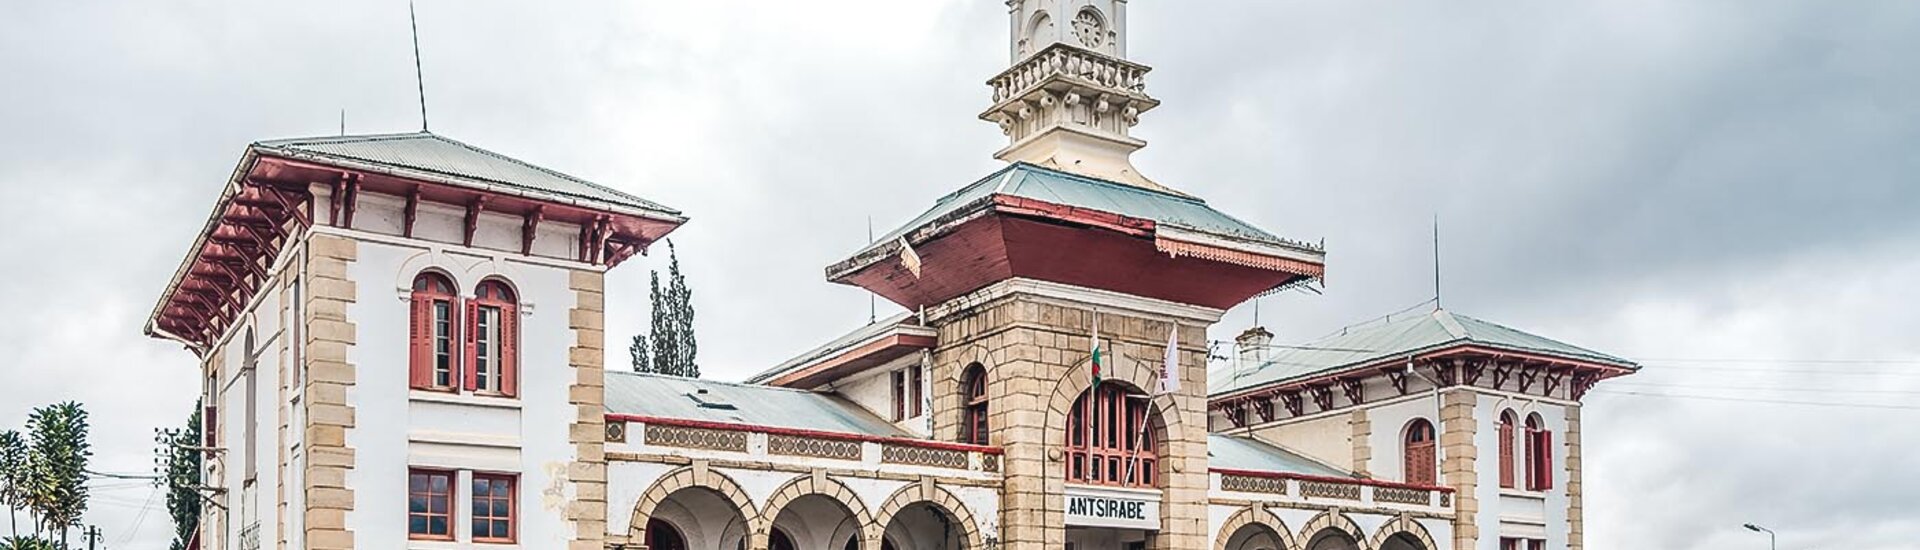 Bahnhof von Antsirabe in Madagaskar